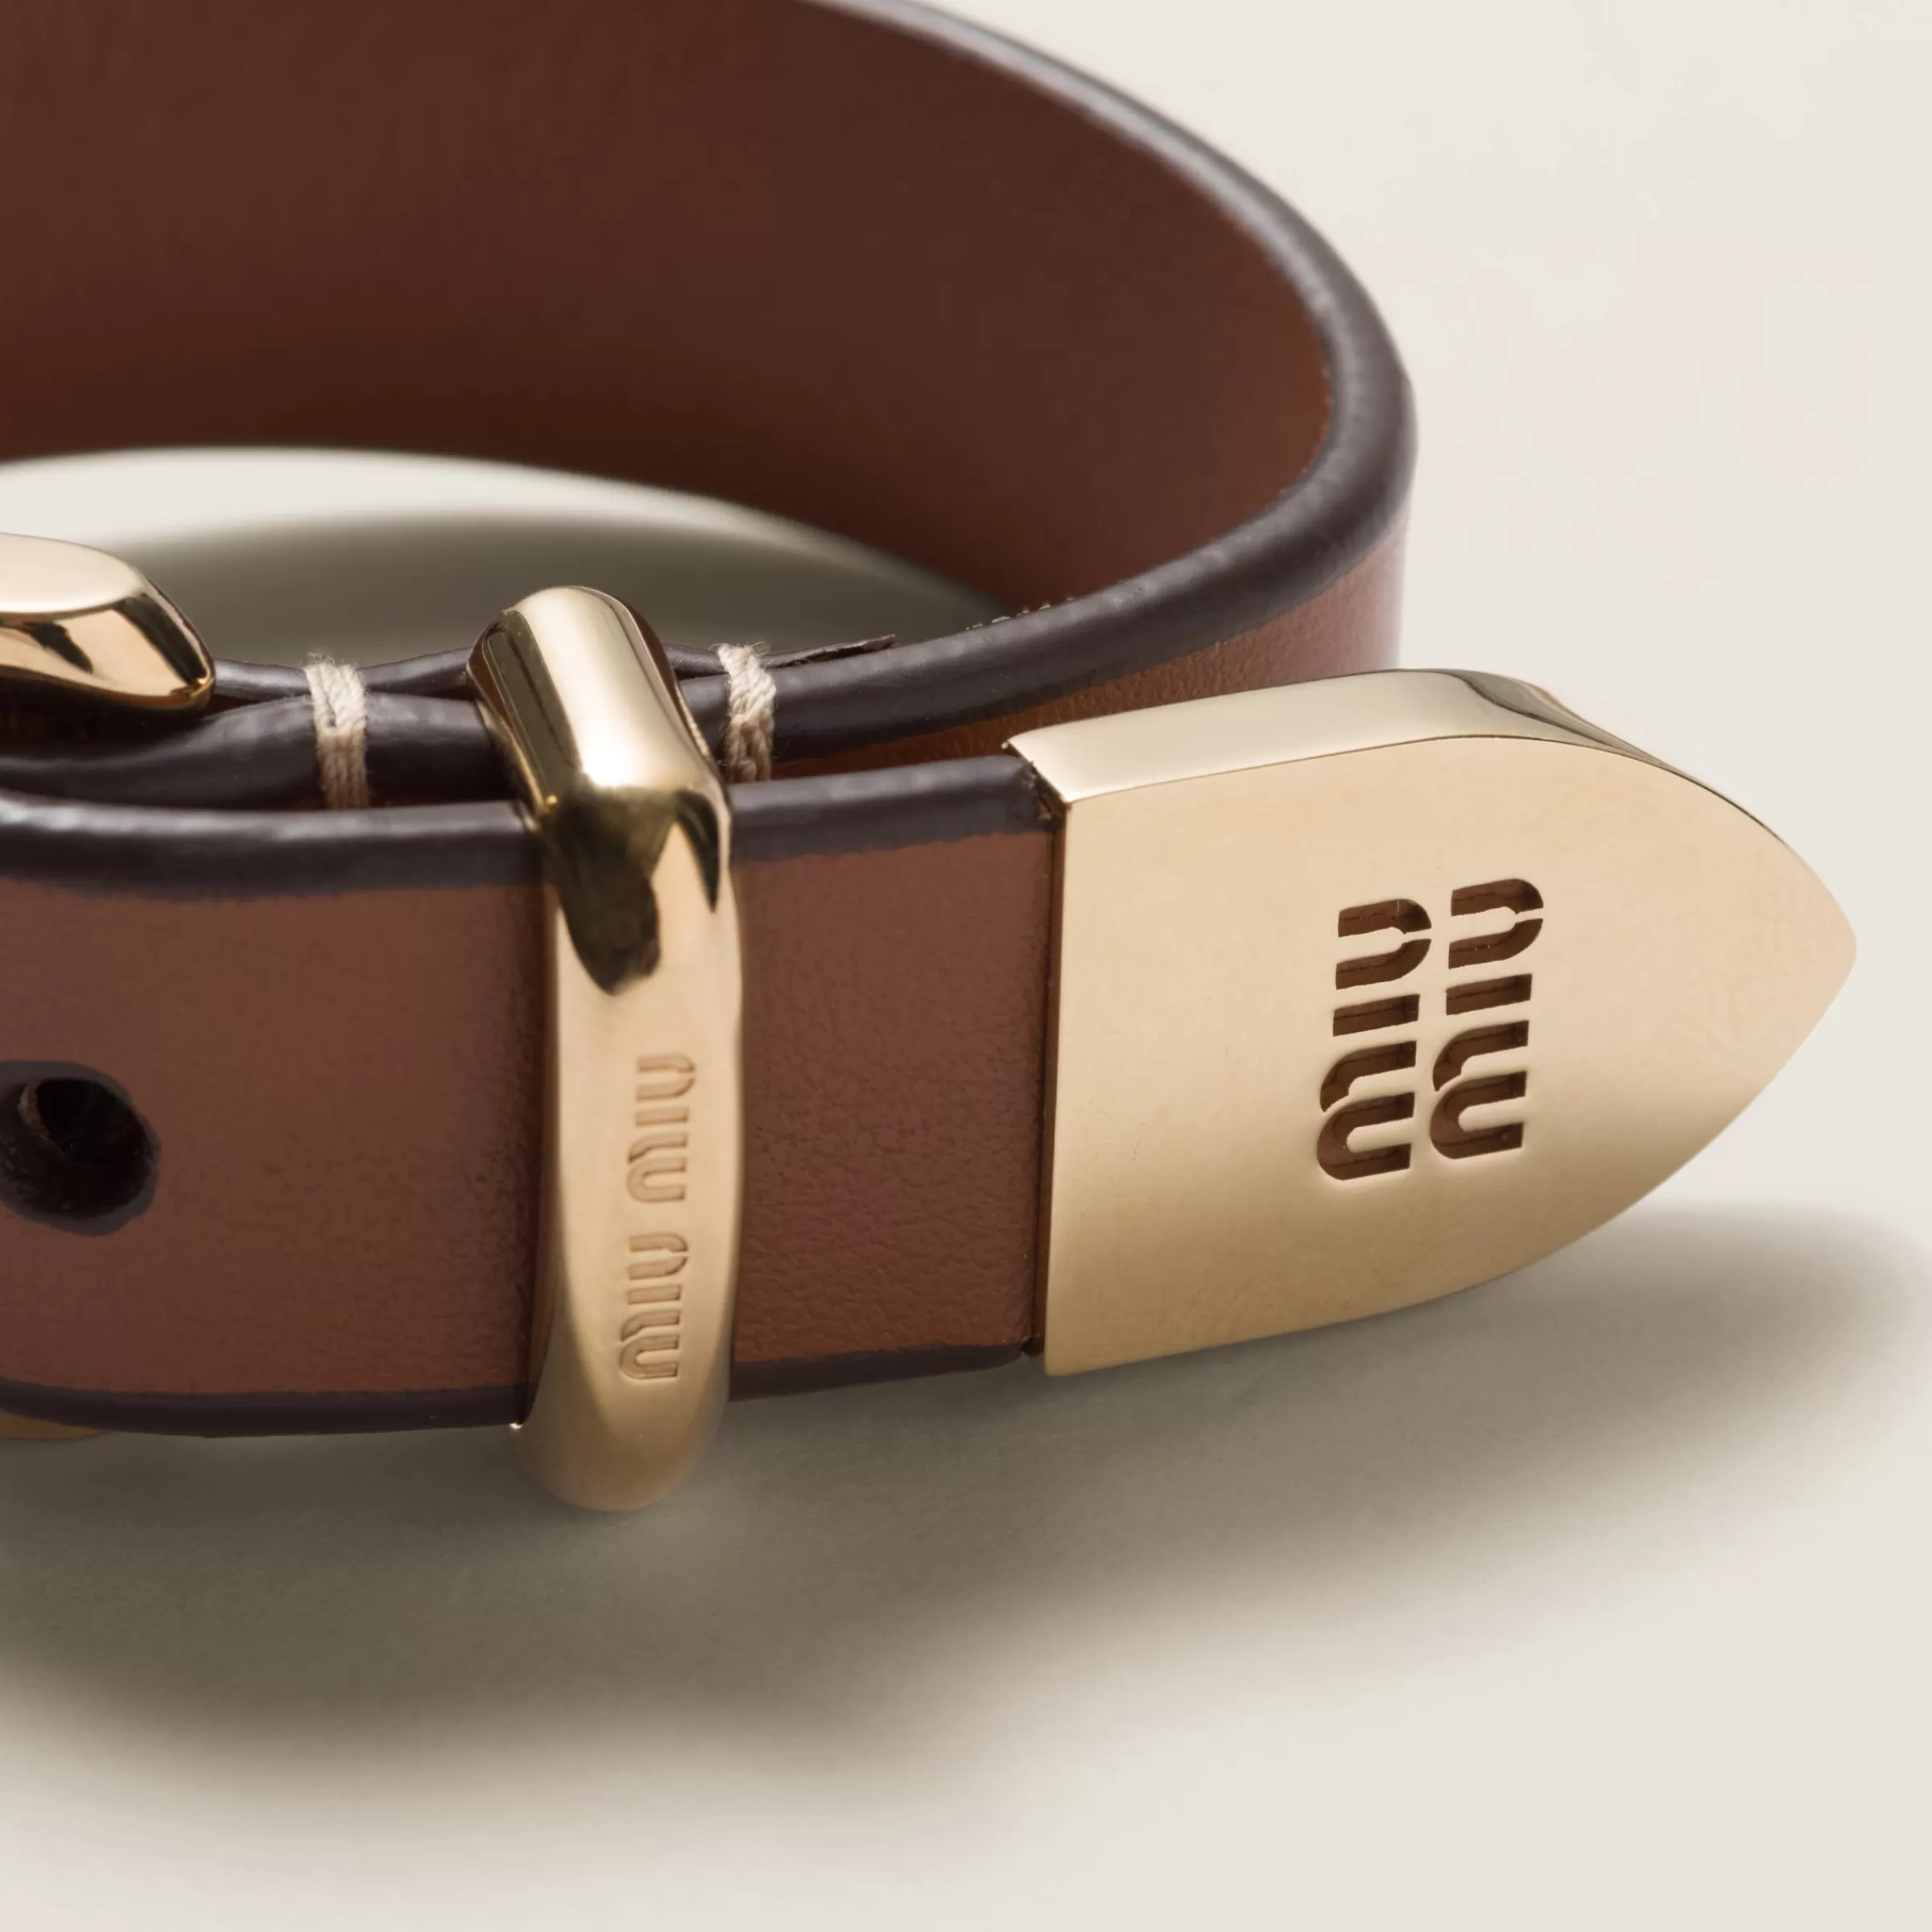 Miu Miu Leather Bracelet |